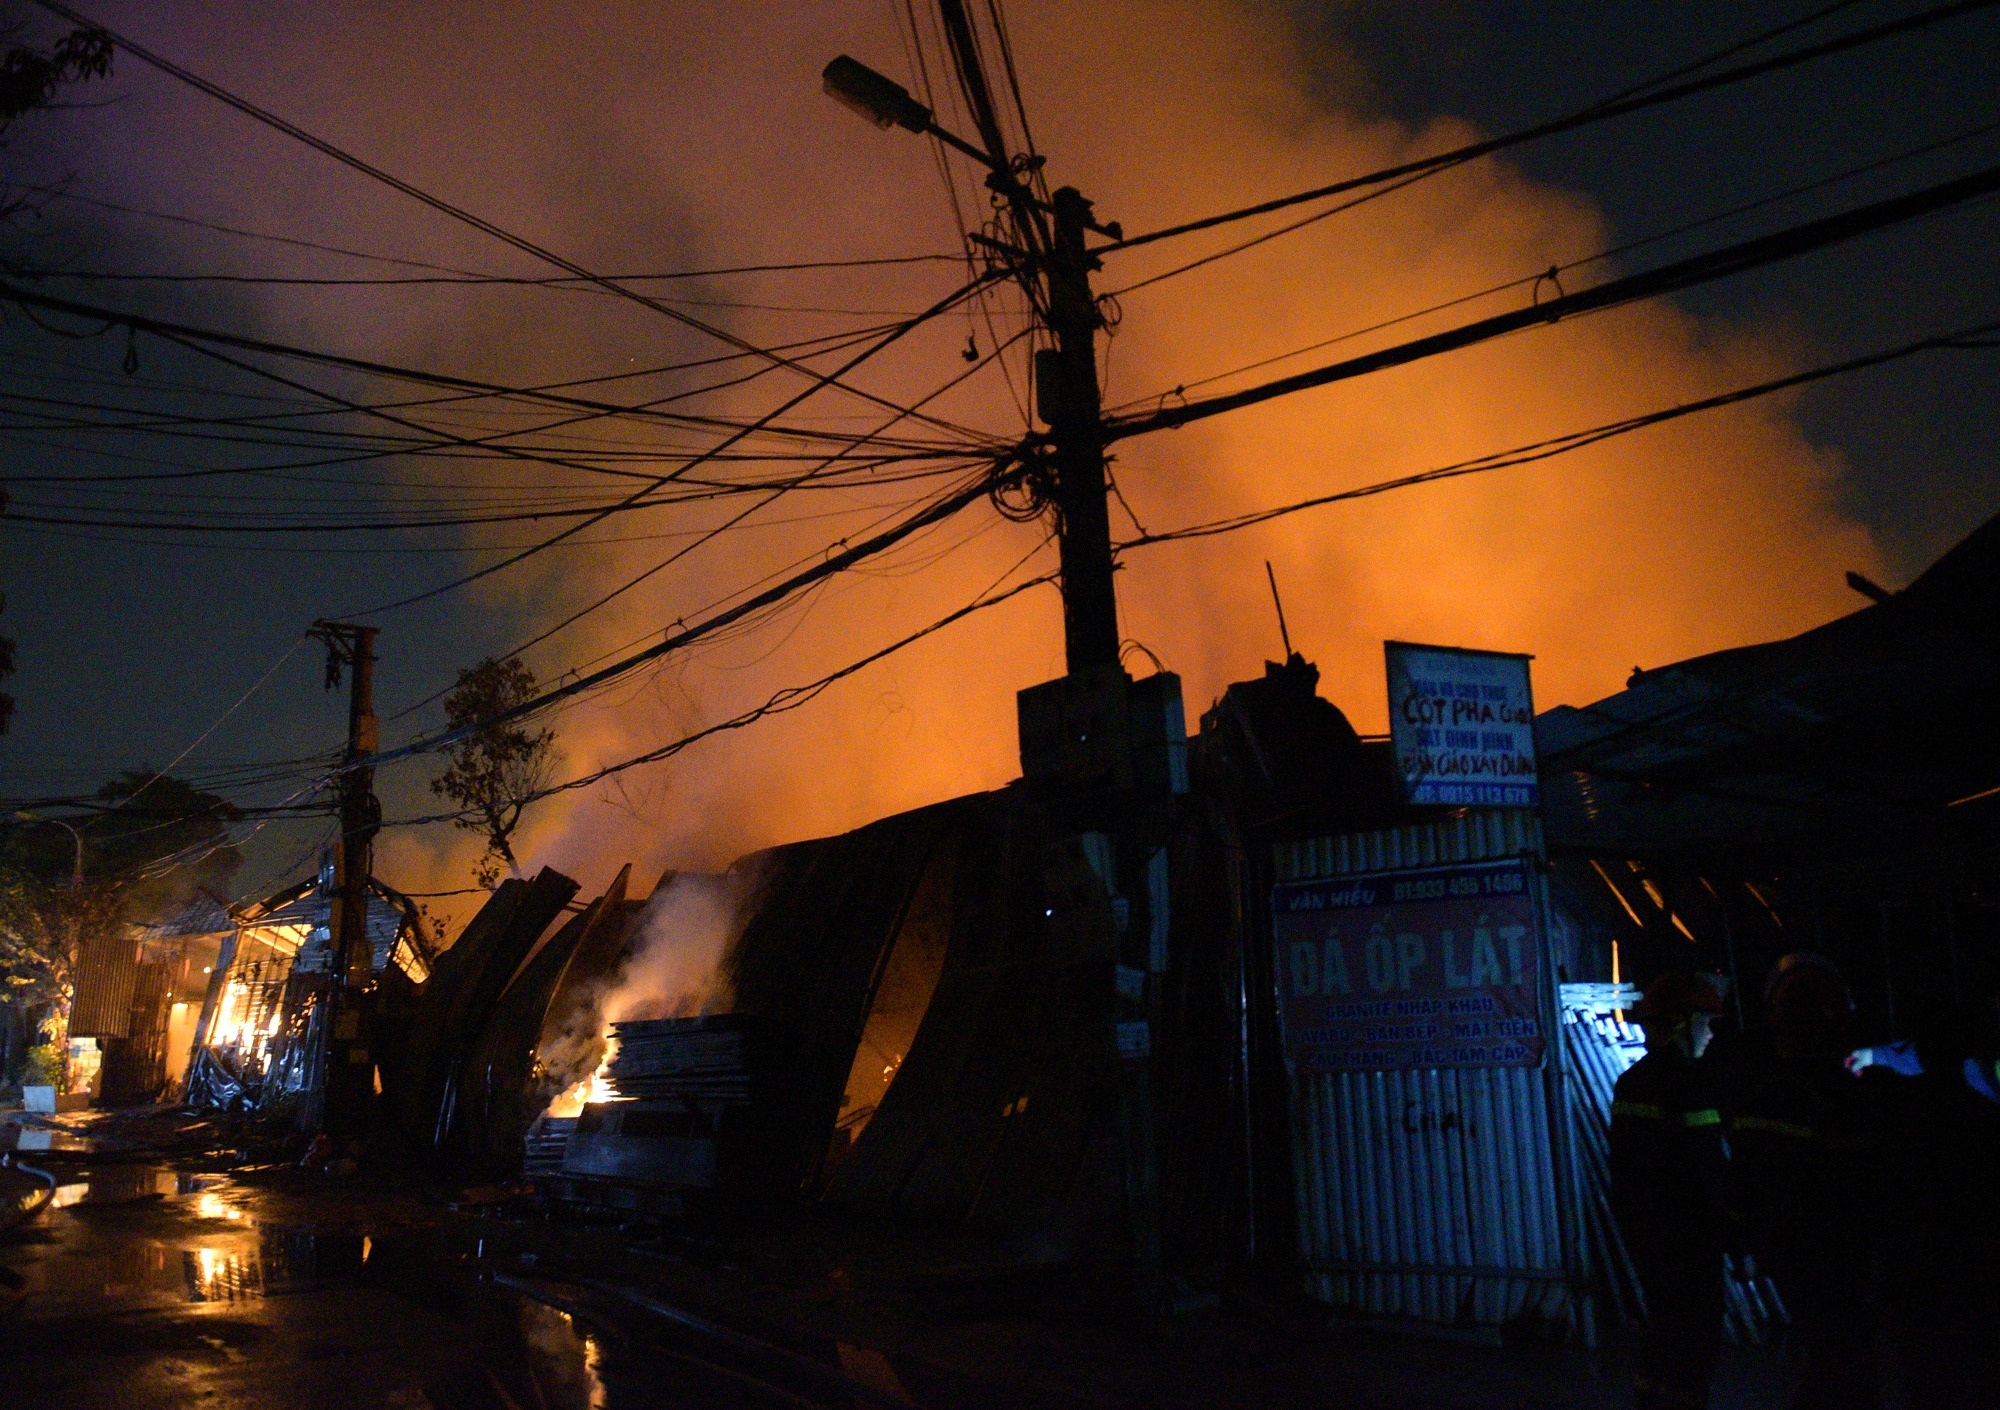 Cháy lớn trong đêm tại kho xưởng quận Nam Từ Liêm - Ảnh 3.